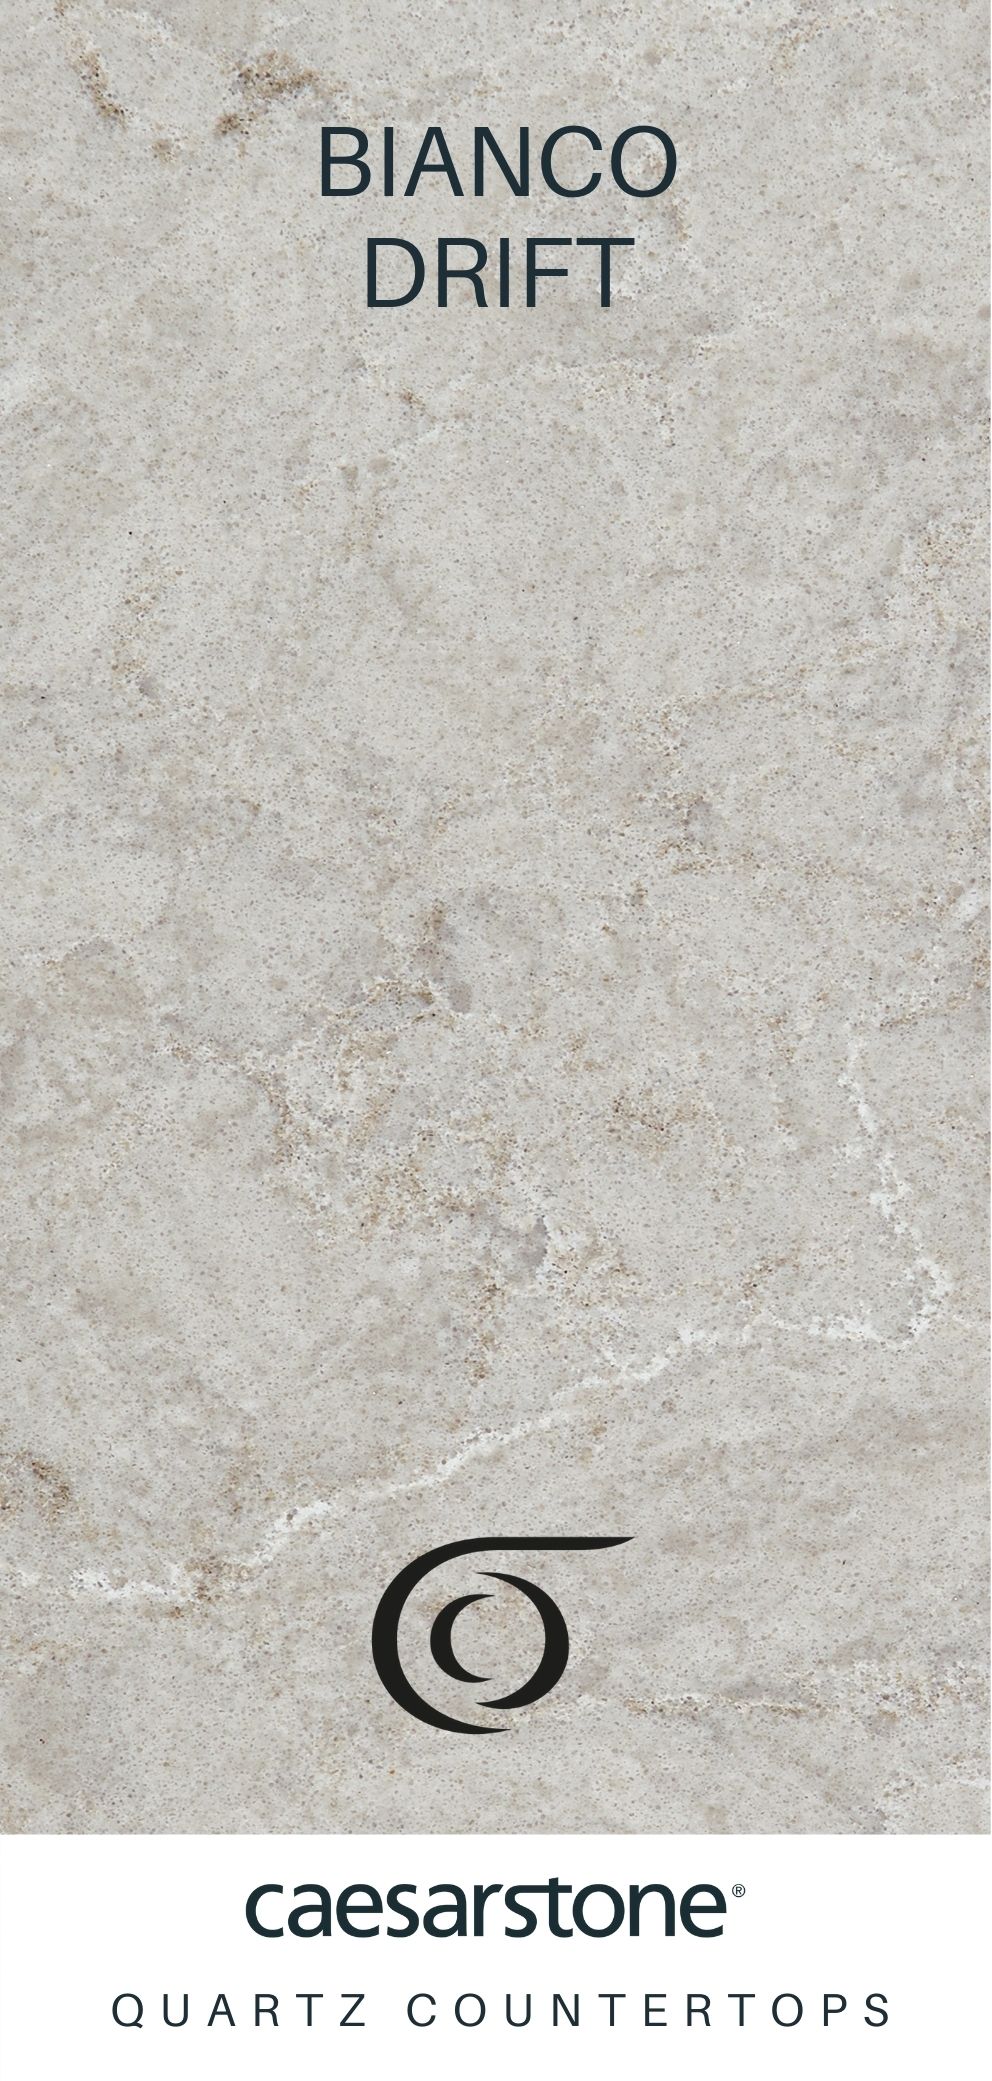 Caesarstone Quartz Countertops Bianco Drift